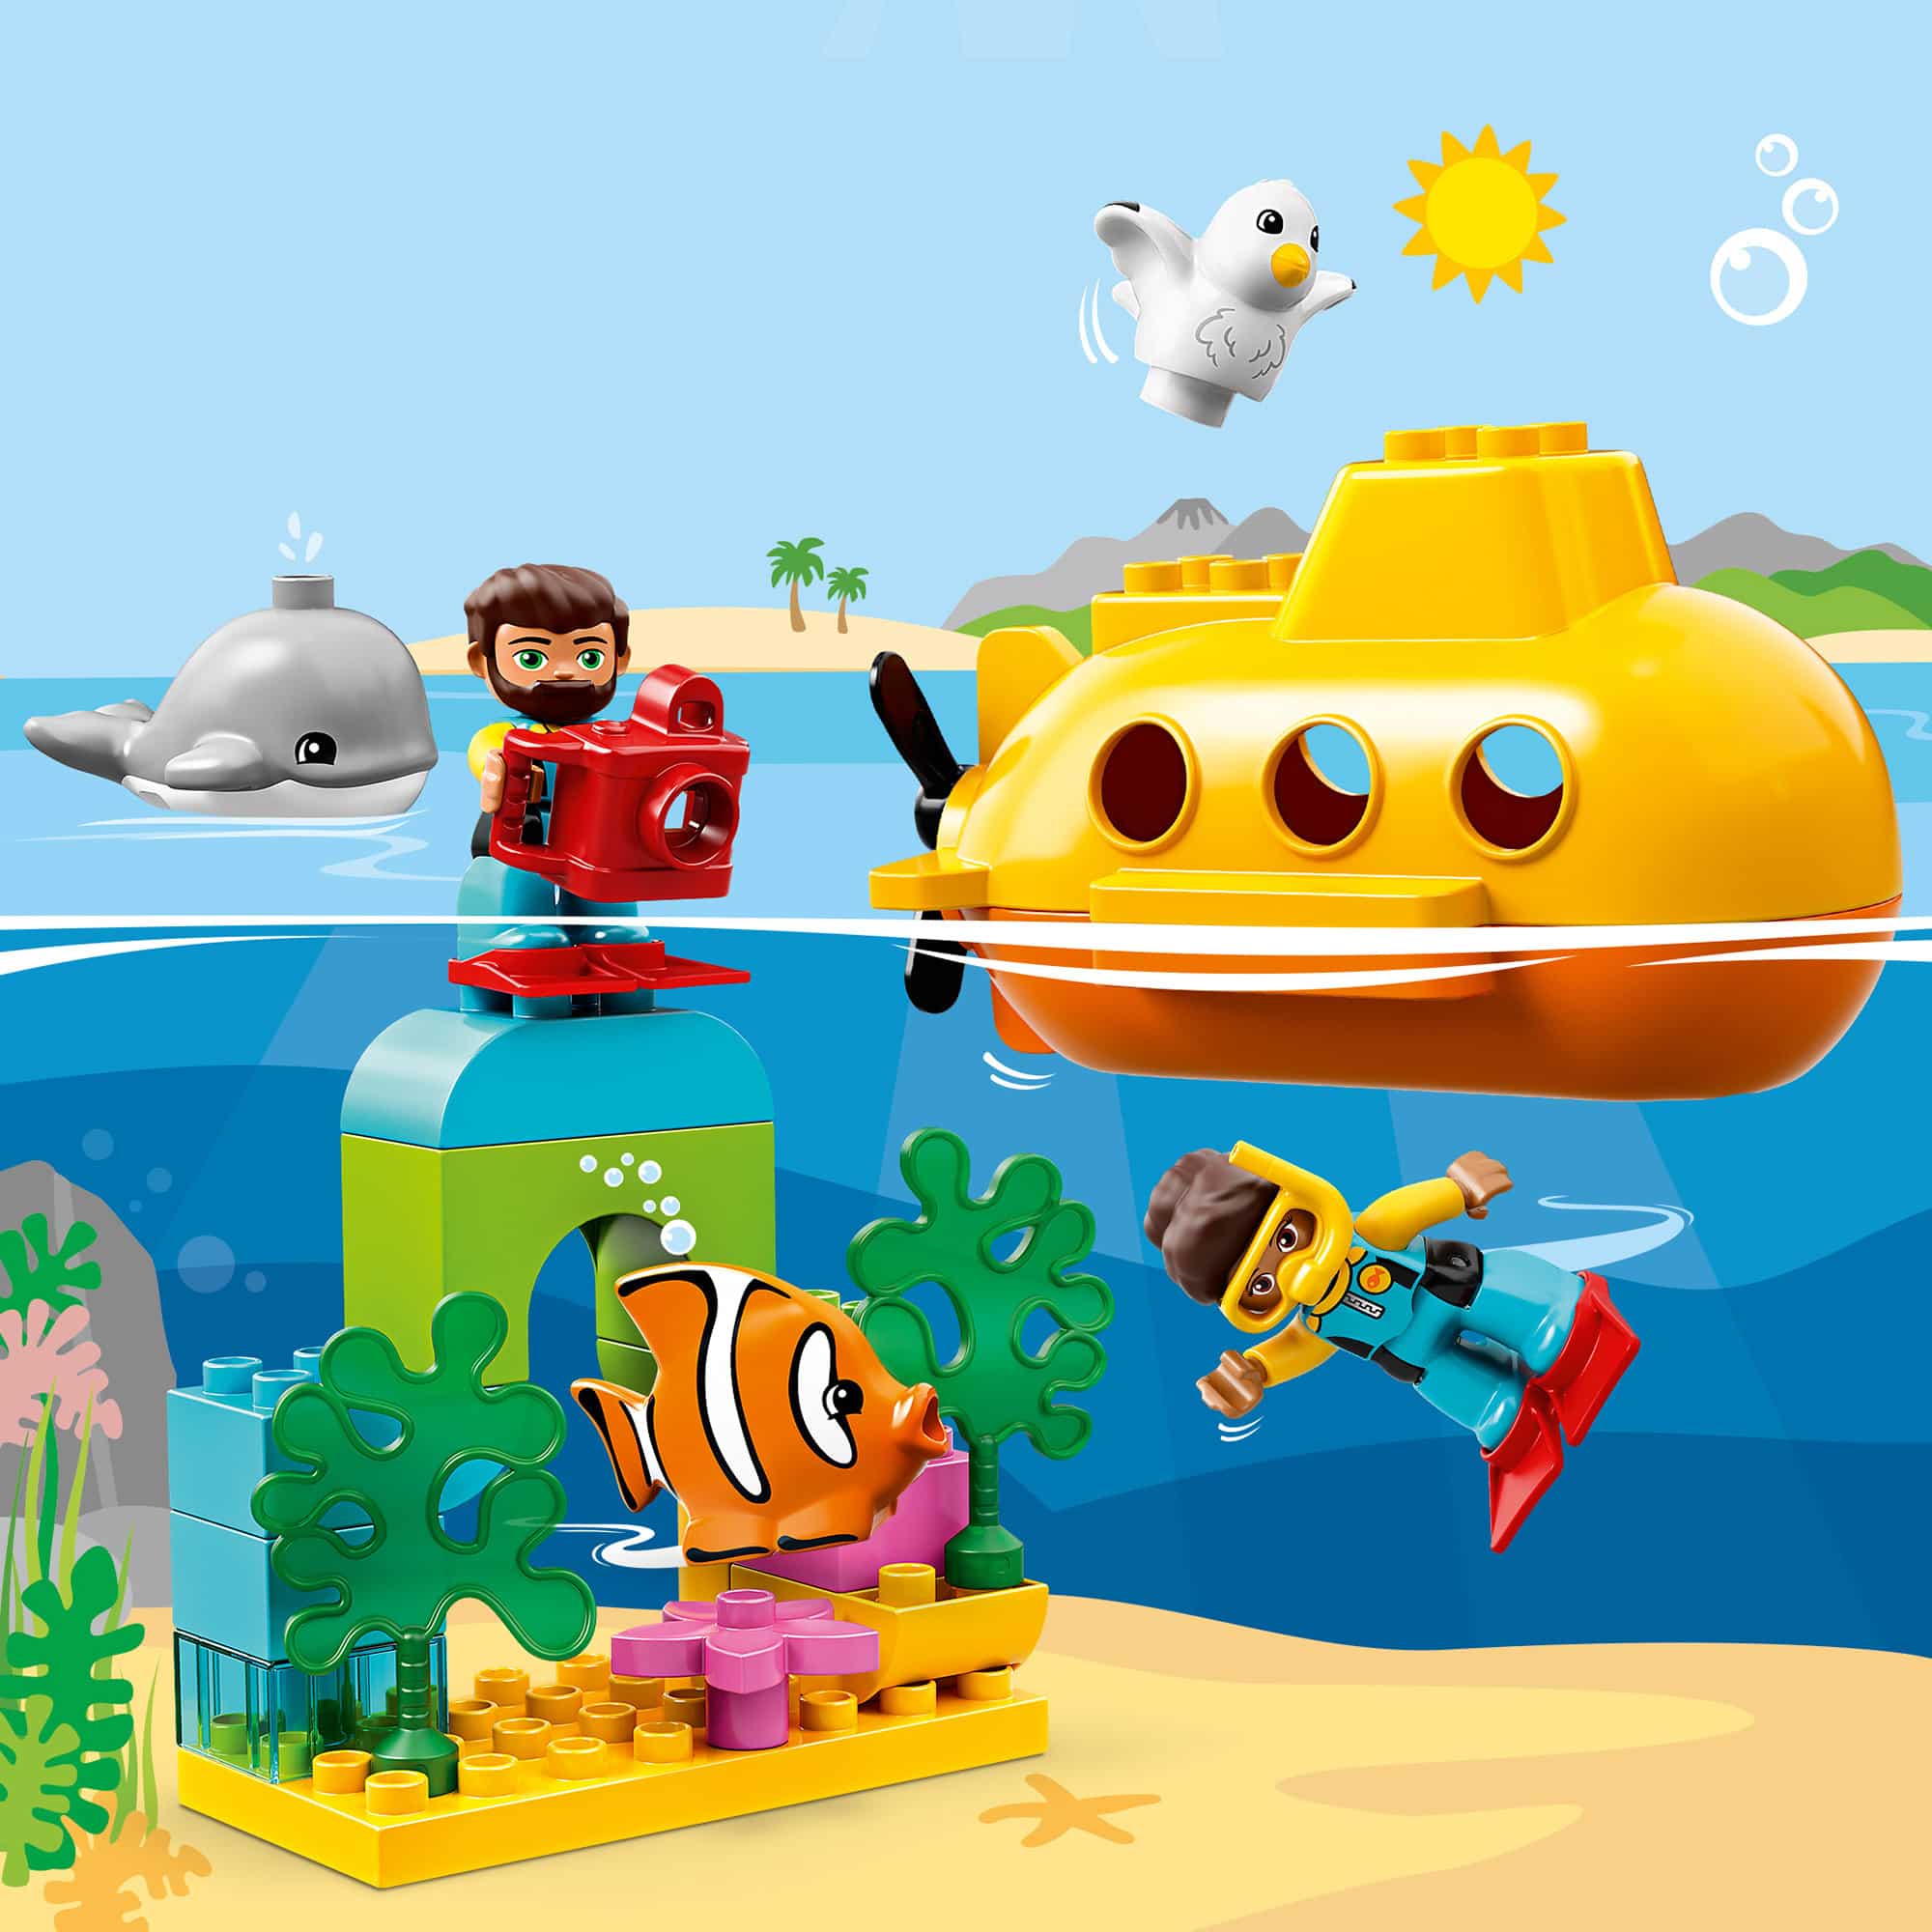 LEGO DUPLO 10910 - Submarine Adventure